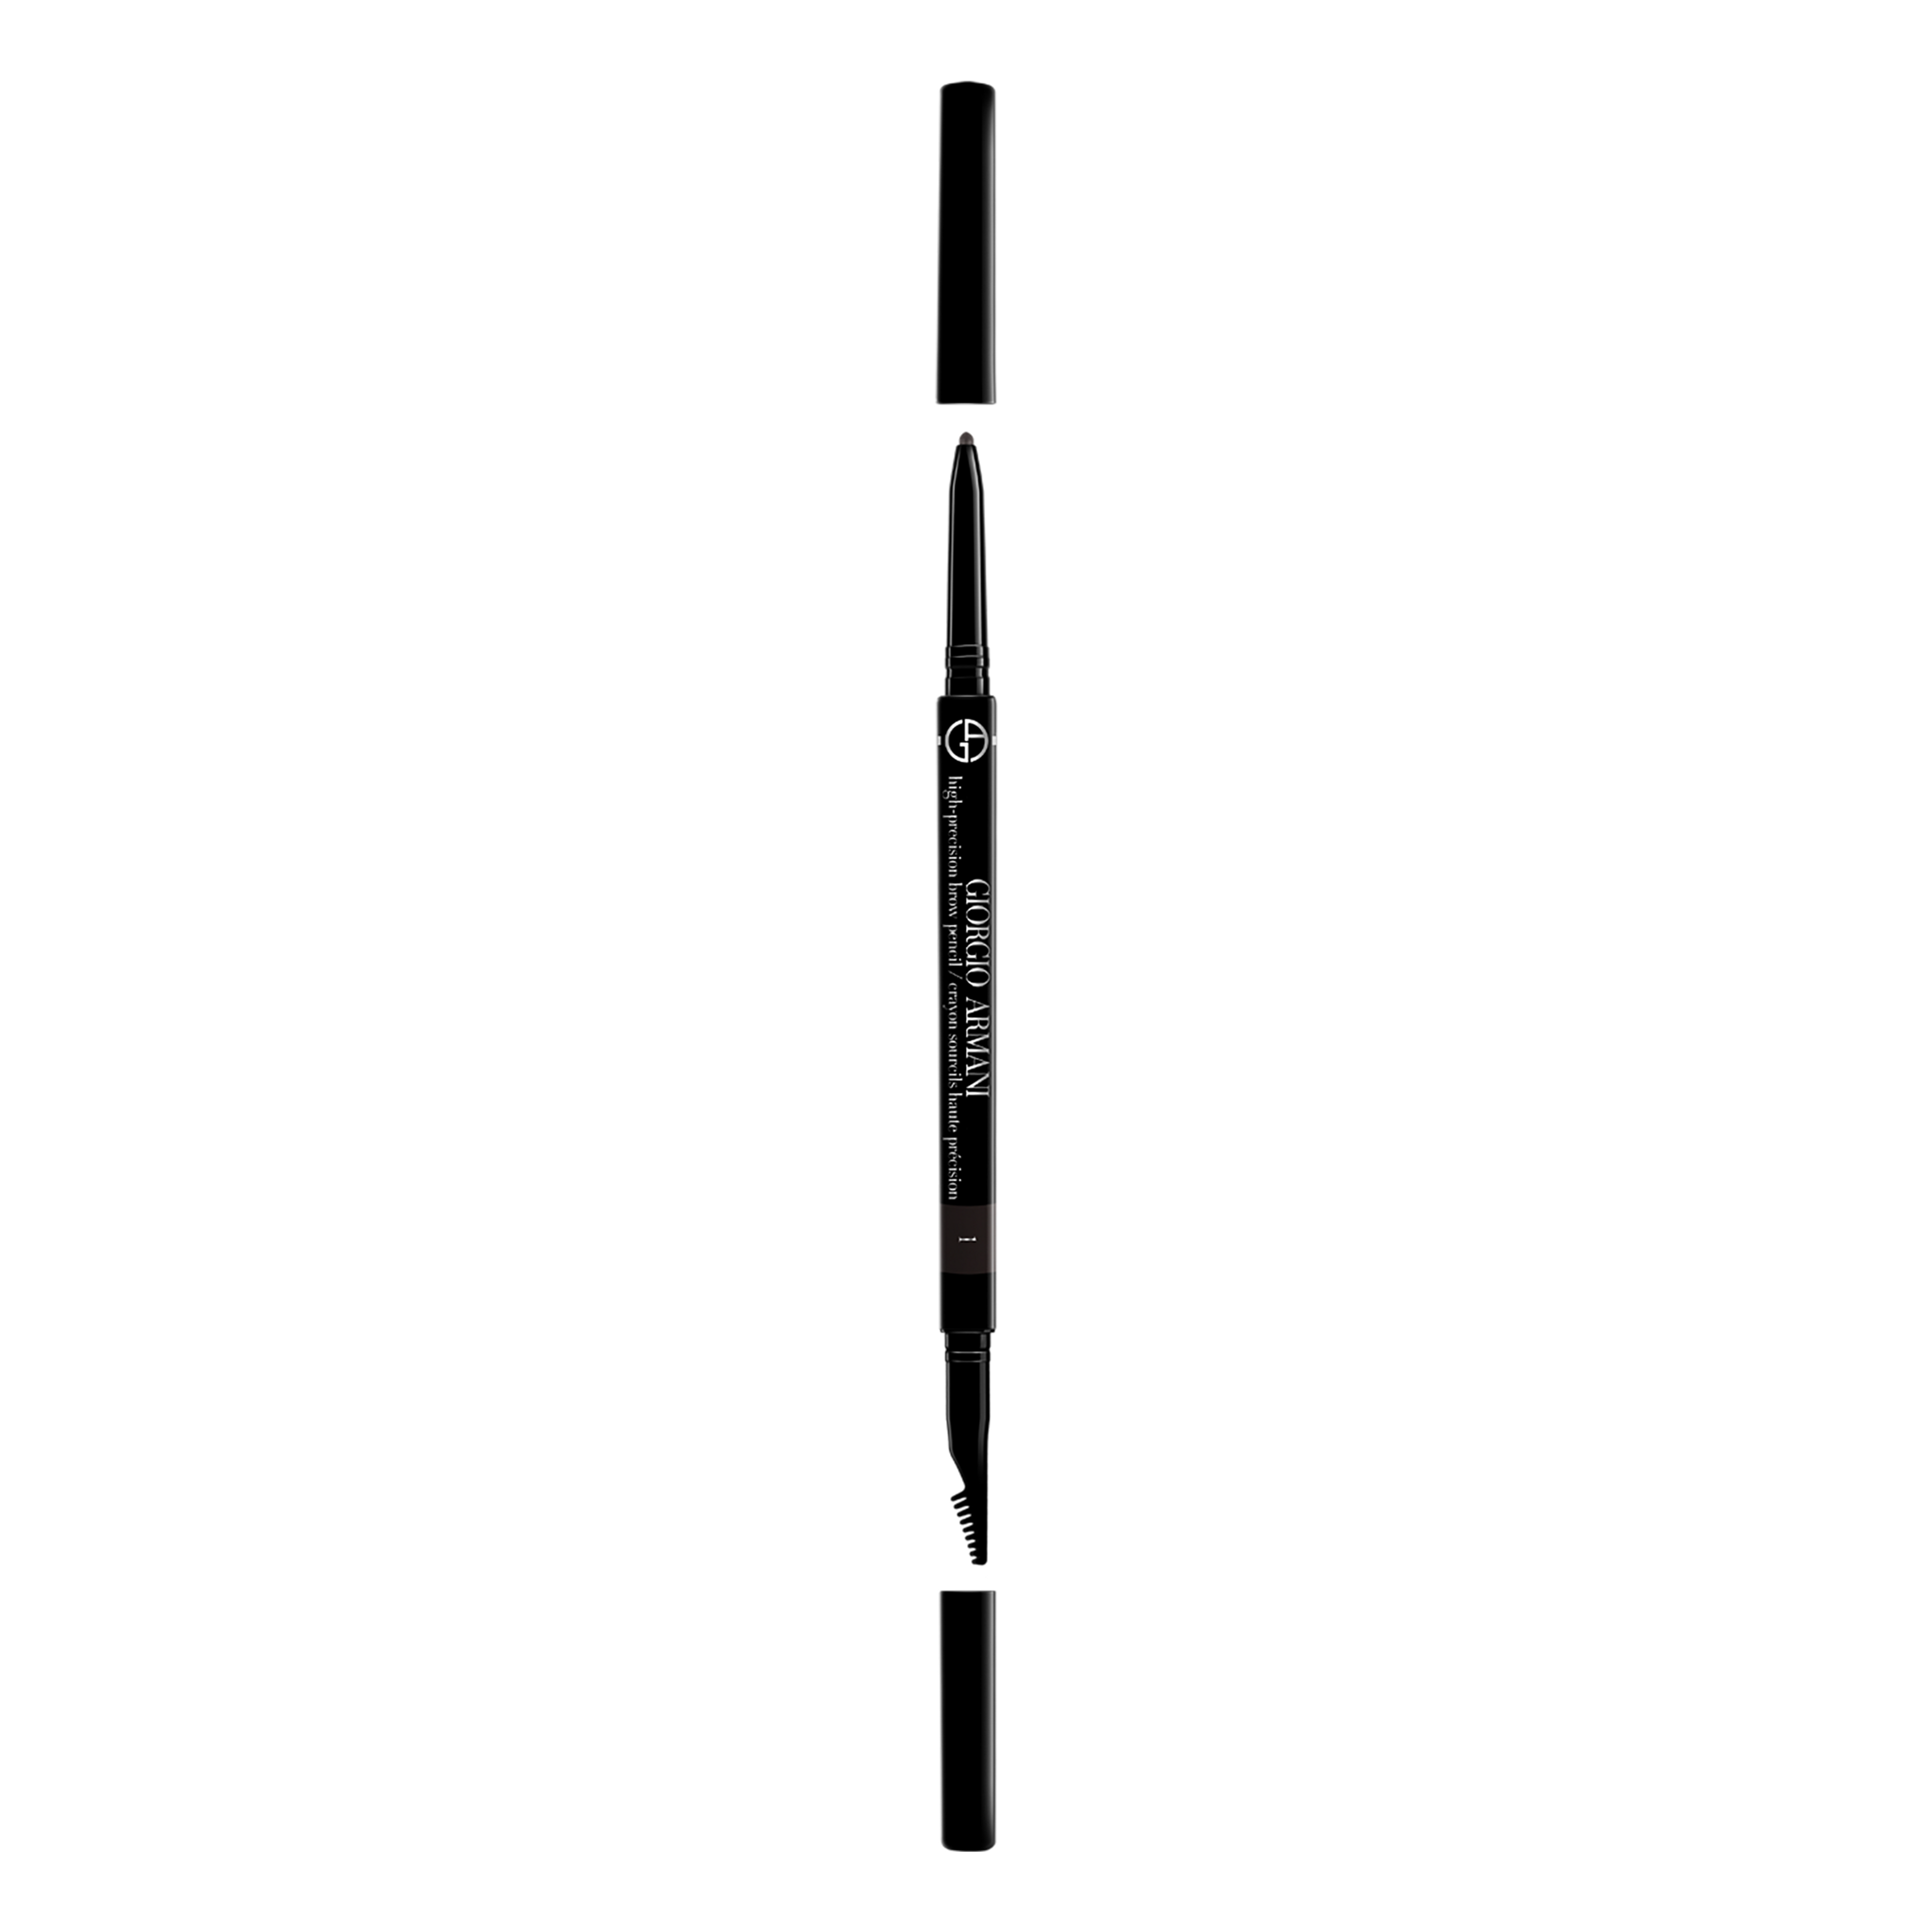 Armani High Precision Brow Pencil Matita Per
 Sopracciglia 2